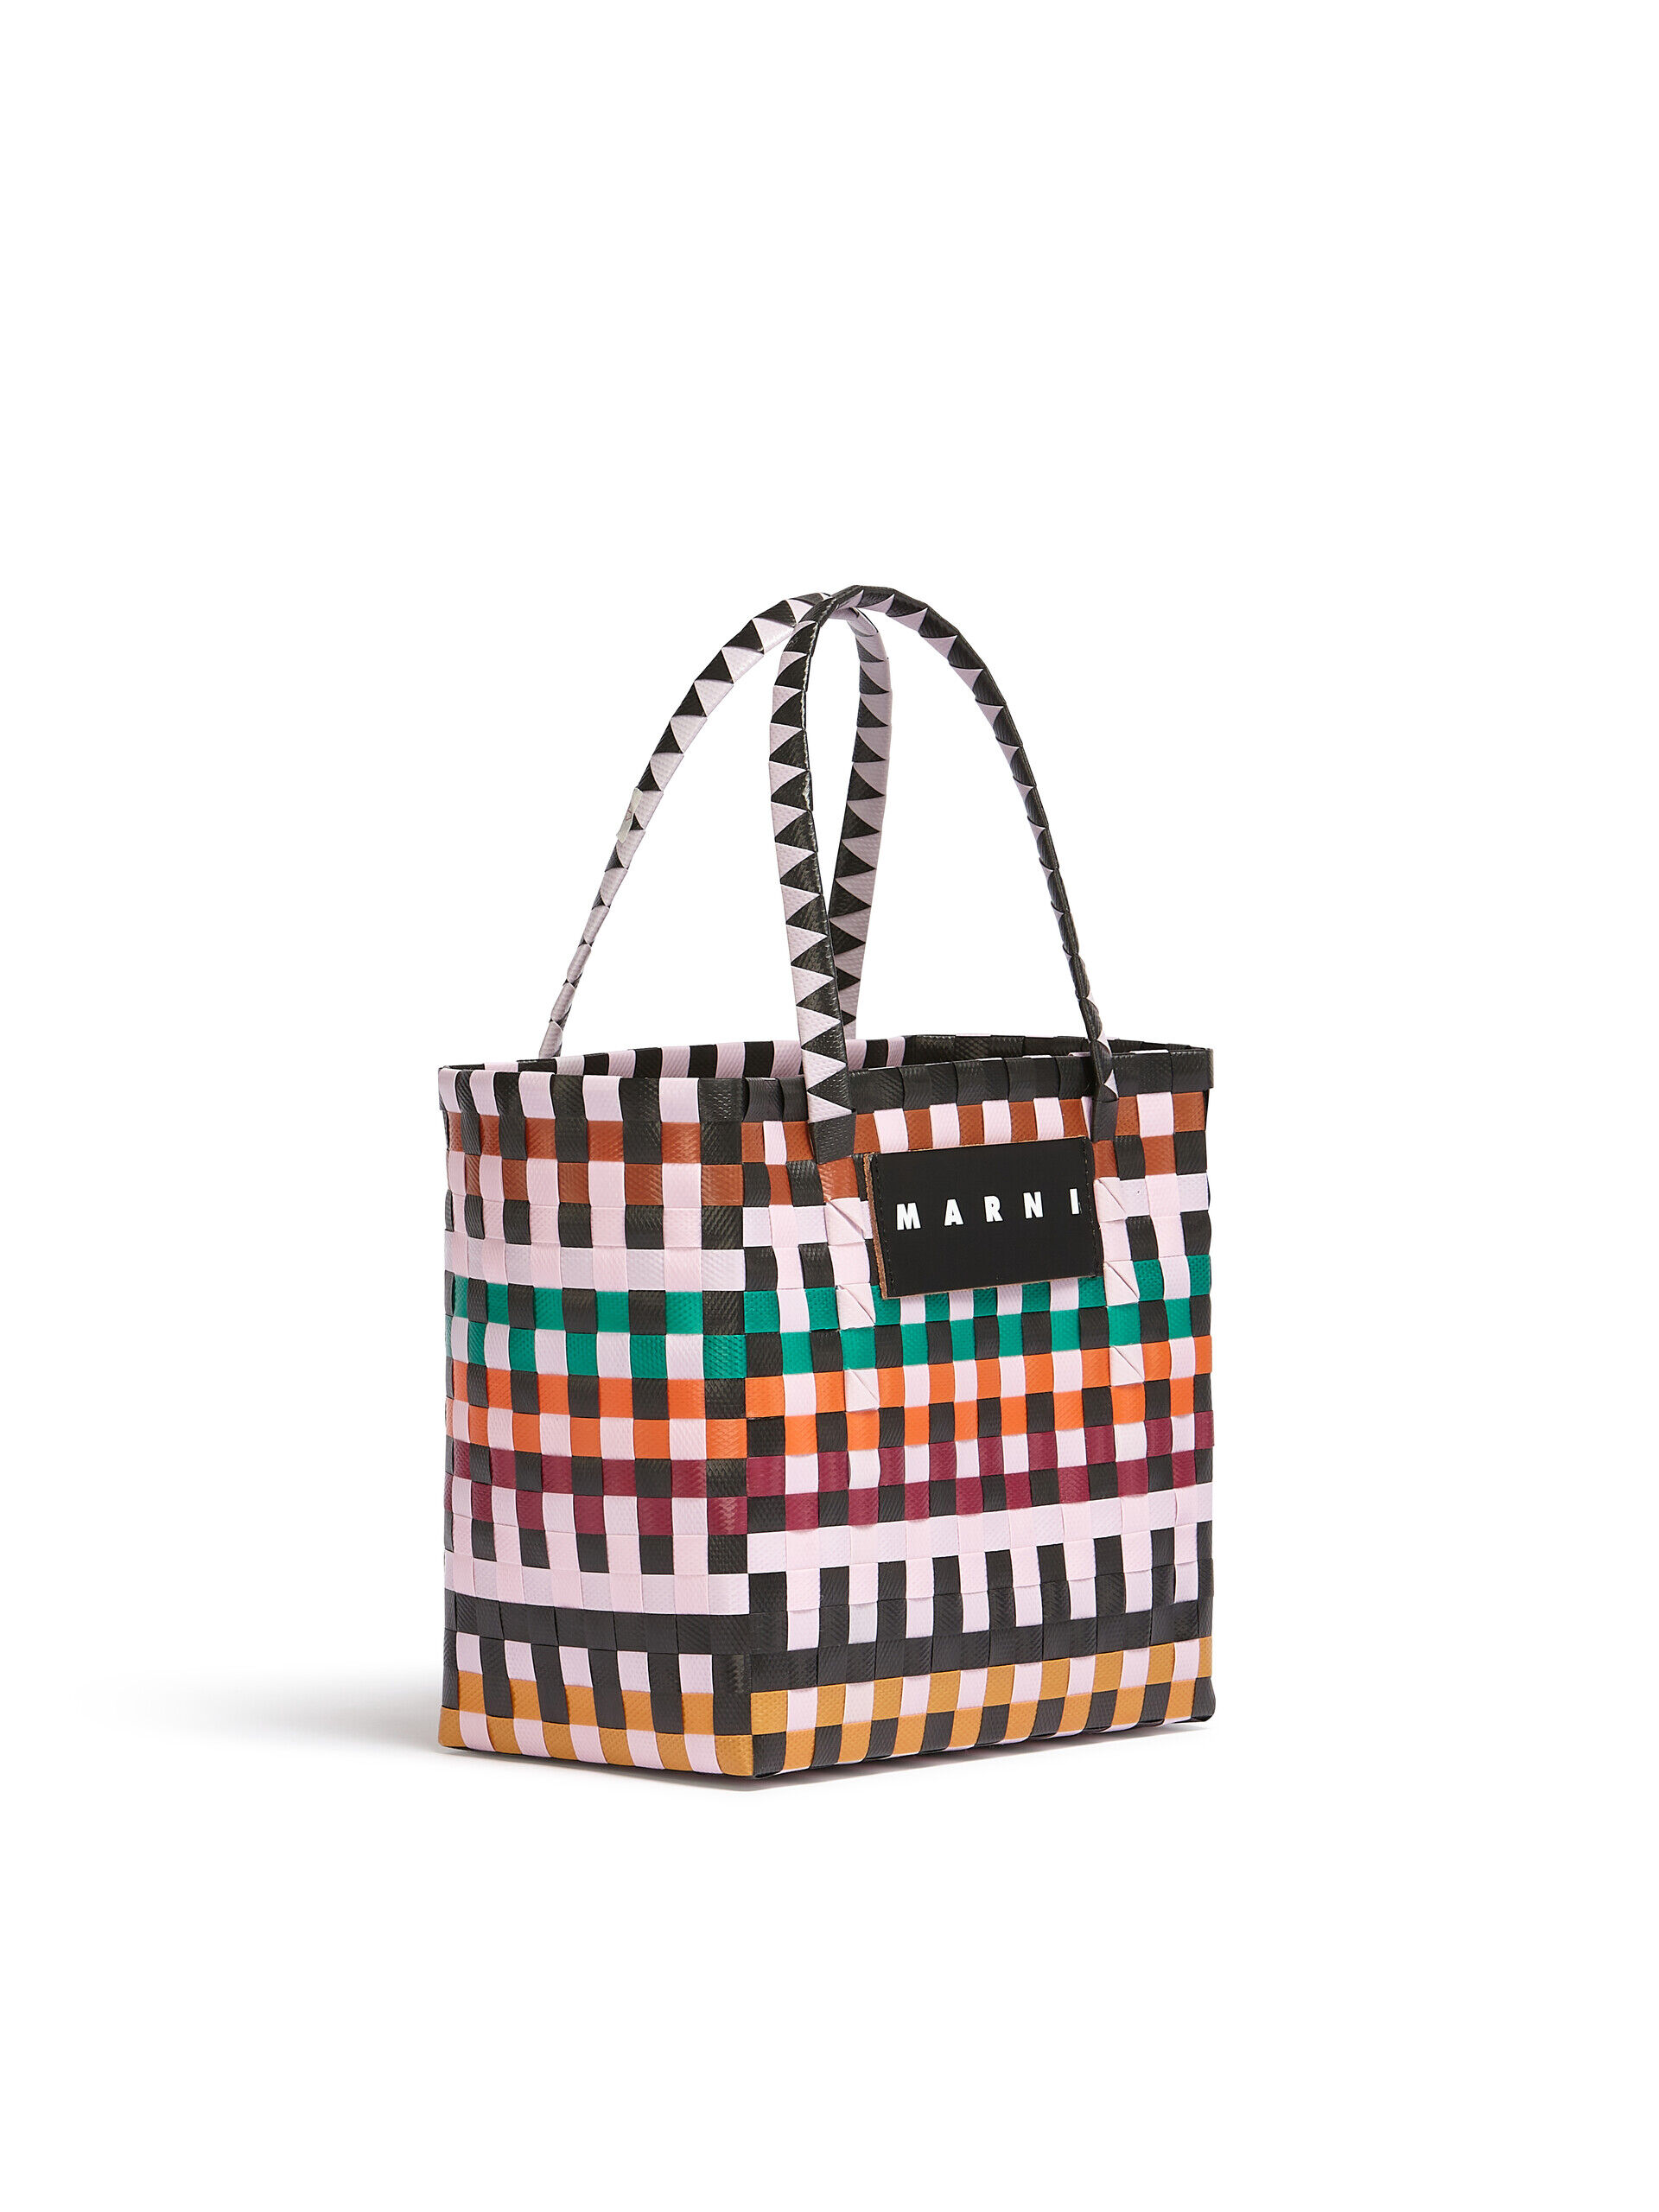 MARNI MARKET MINI BASKET bag in multicolor woven material | Marni